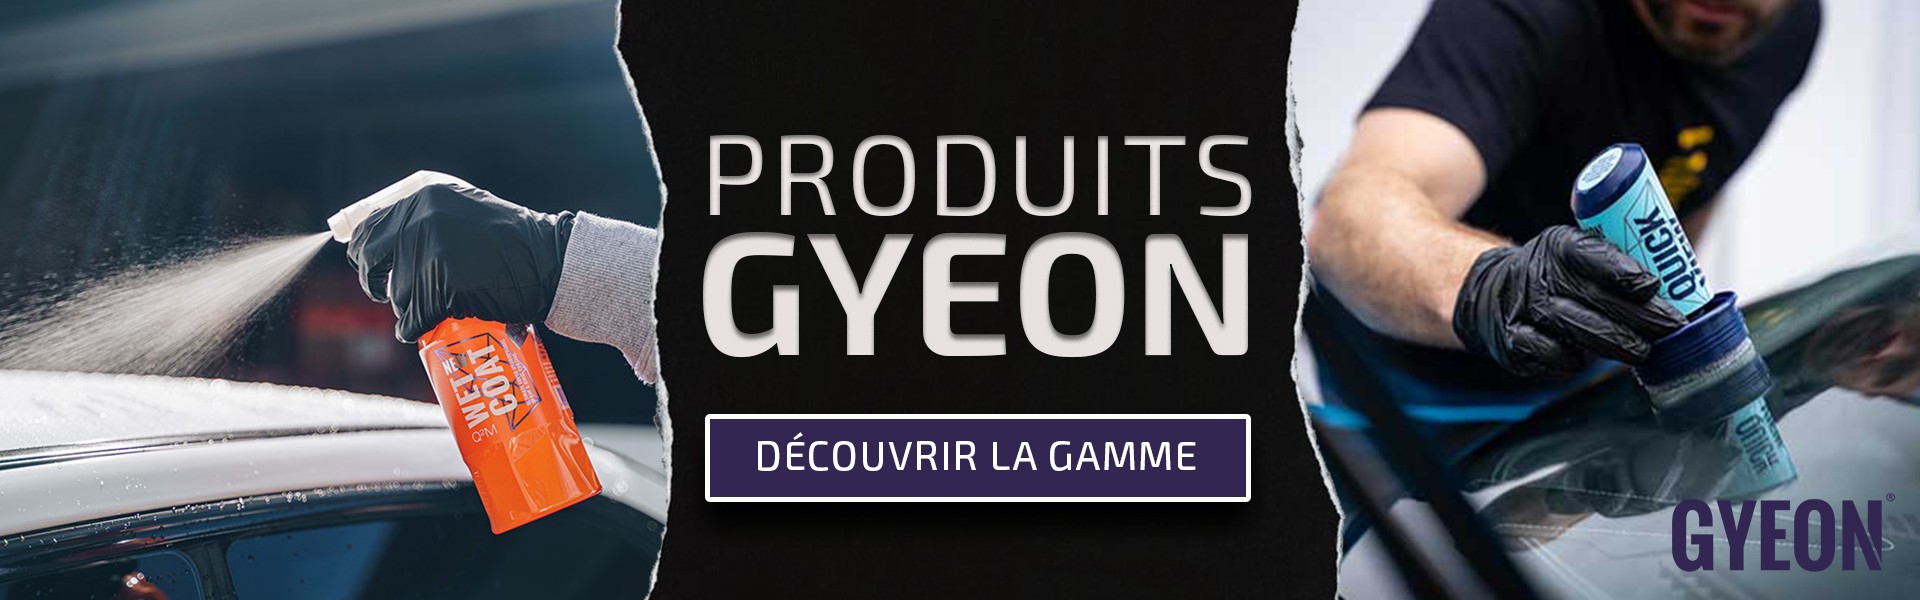 Produits GYEON